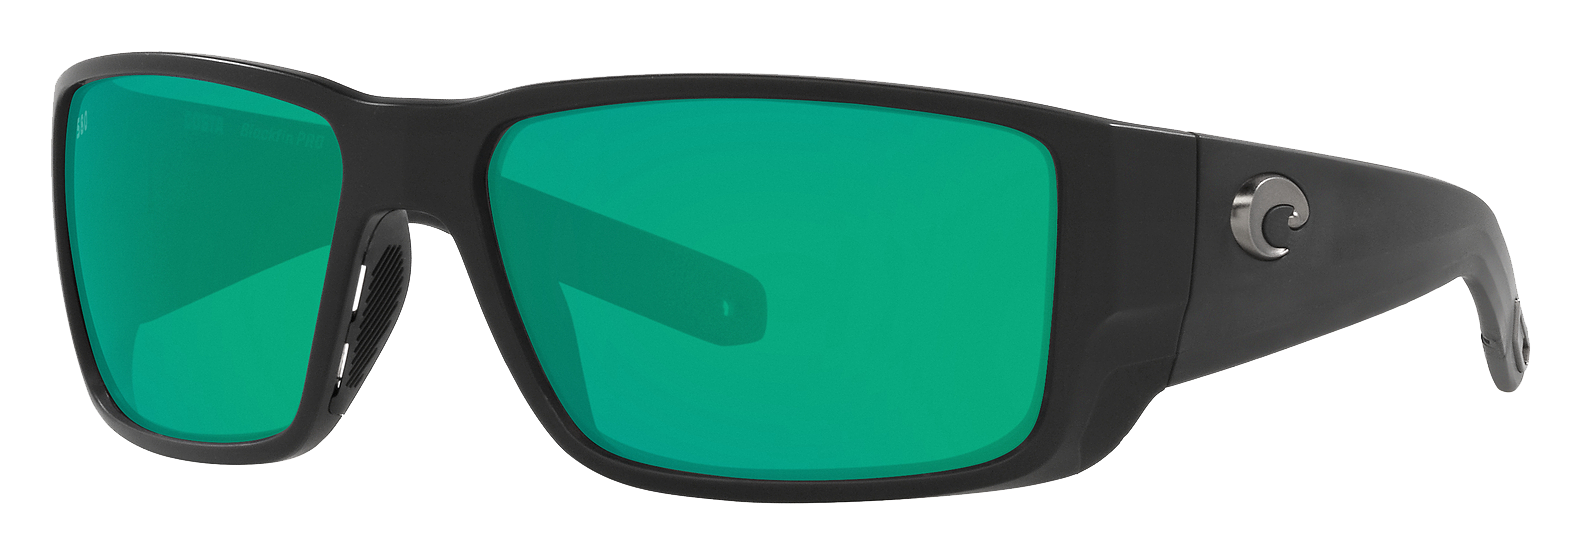 Costa Del Mar Blackfin 580G Glass Polarized Sunglasses